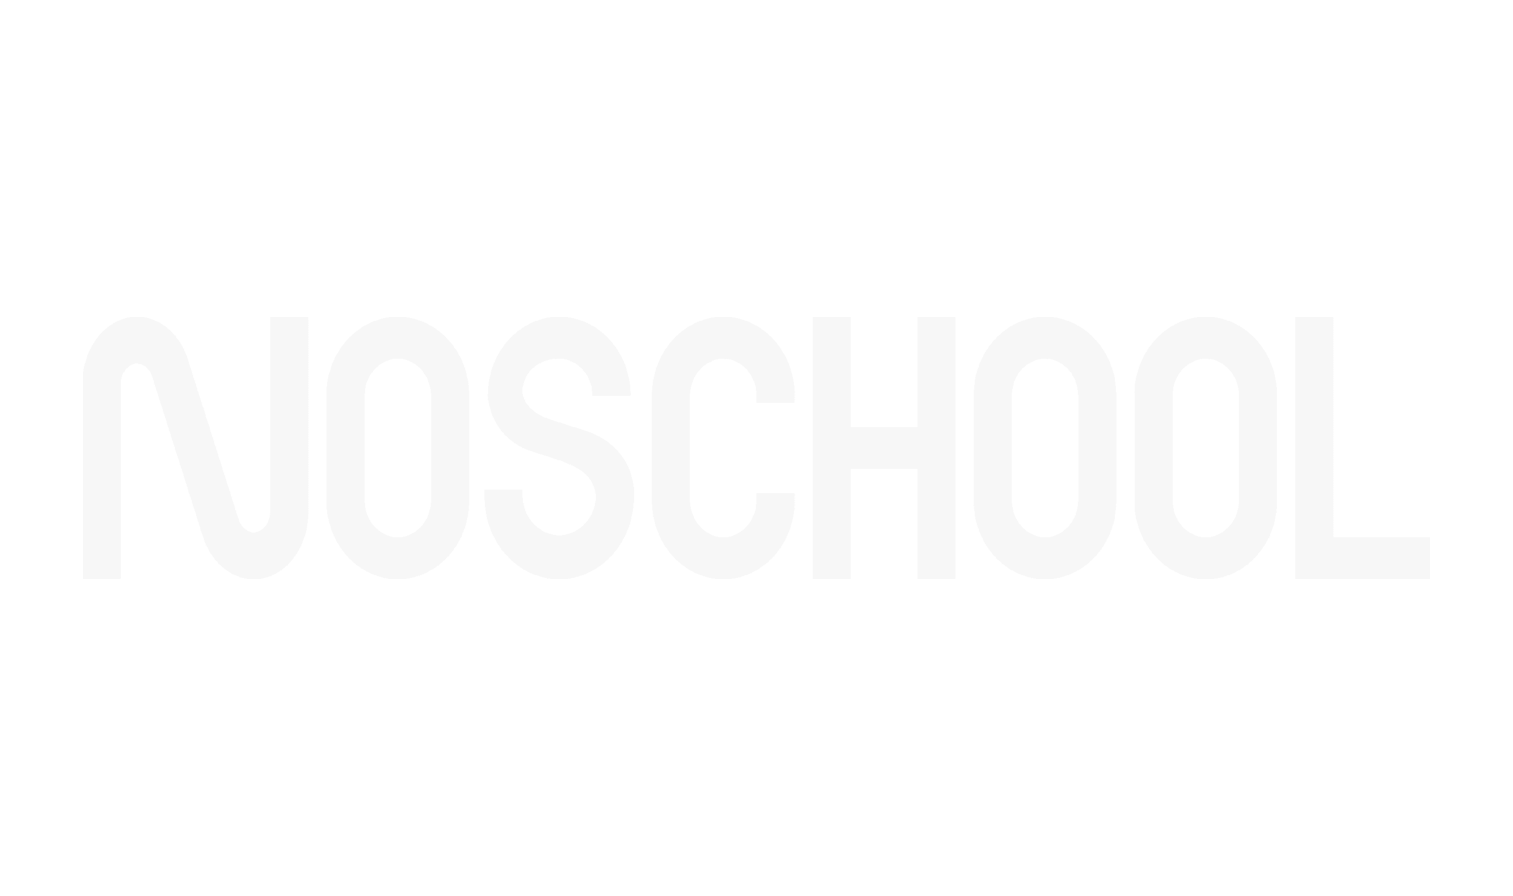 logo noschool bordeaux